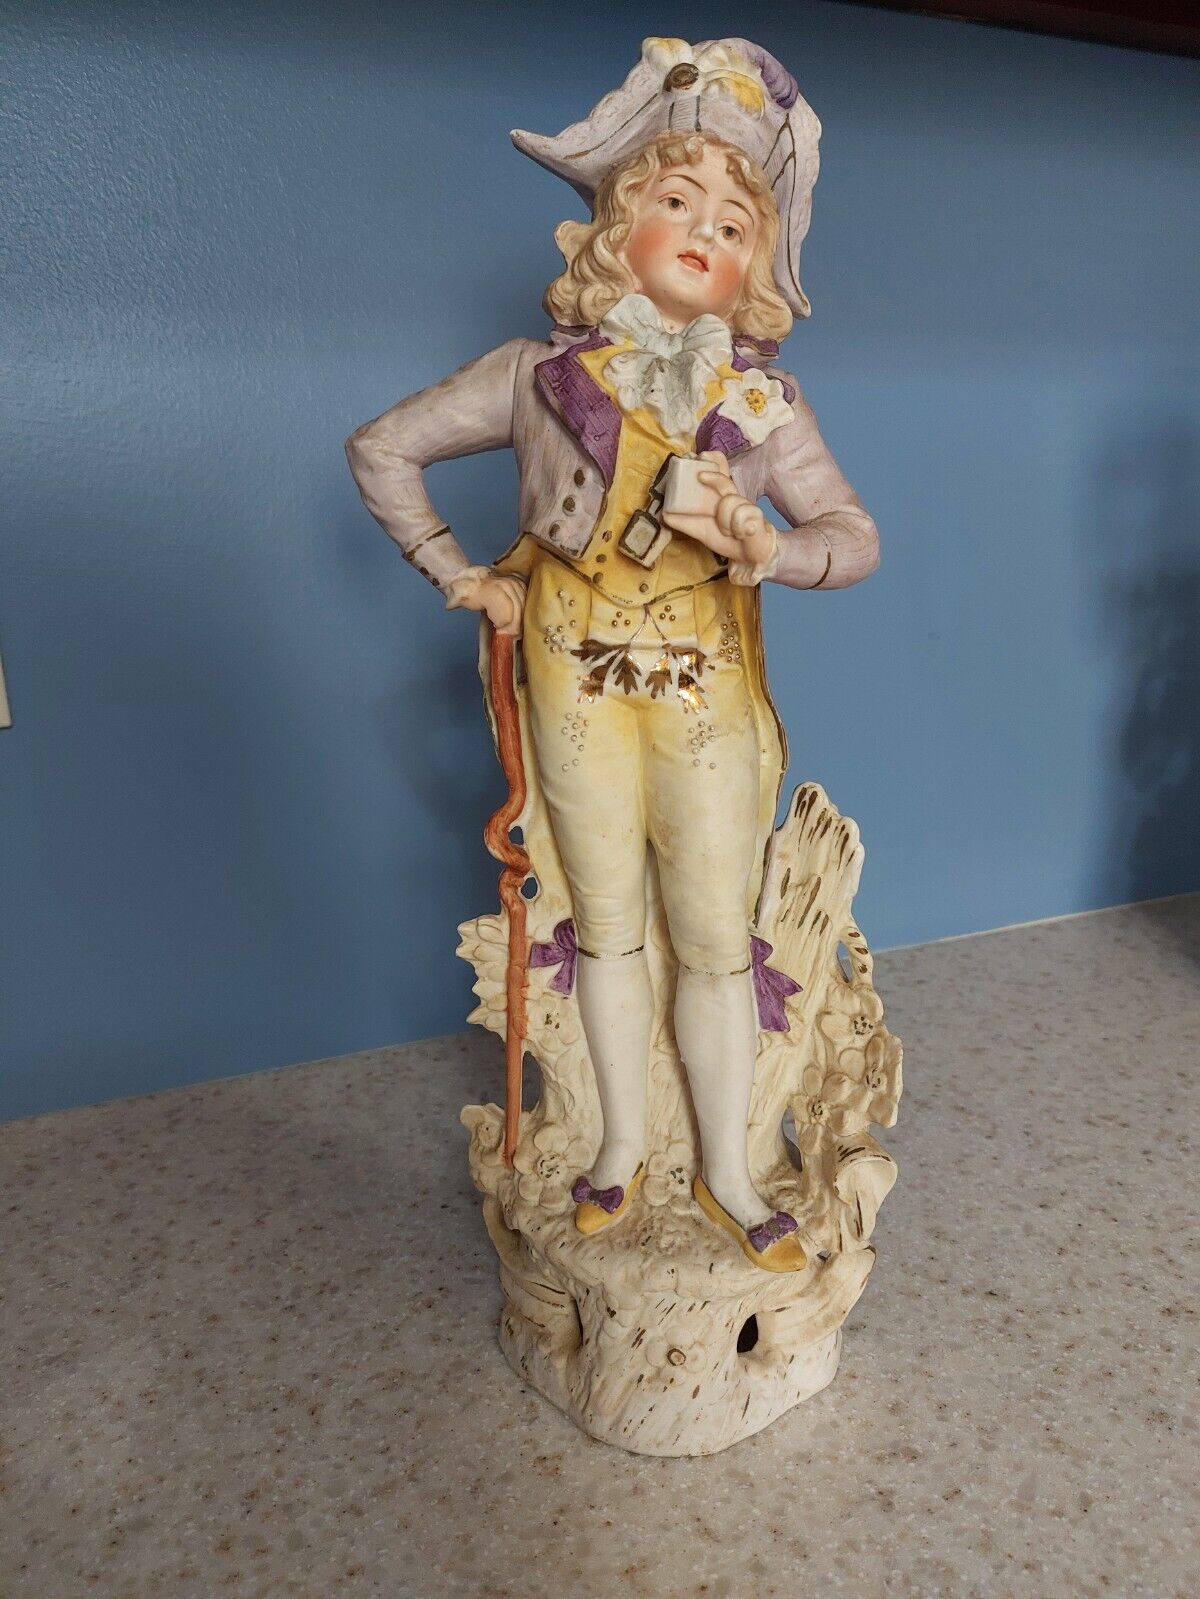 Antique German Carl Schneider Bisque Porcelain Figurine Man 19th century statue